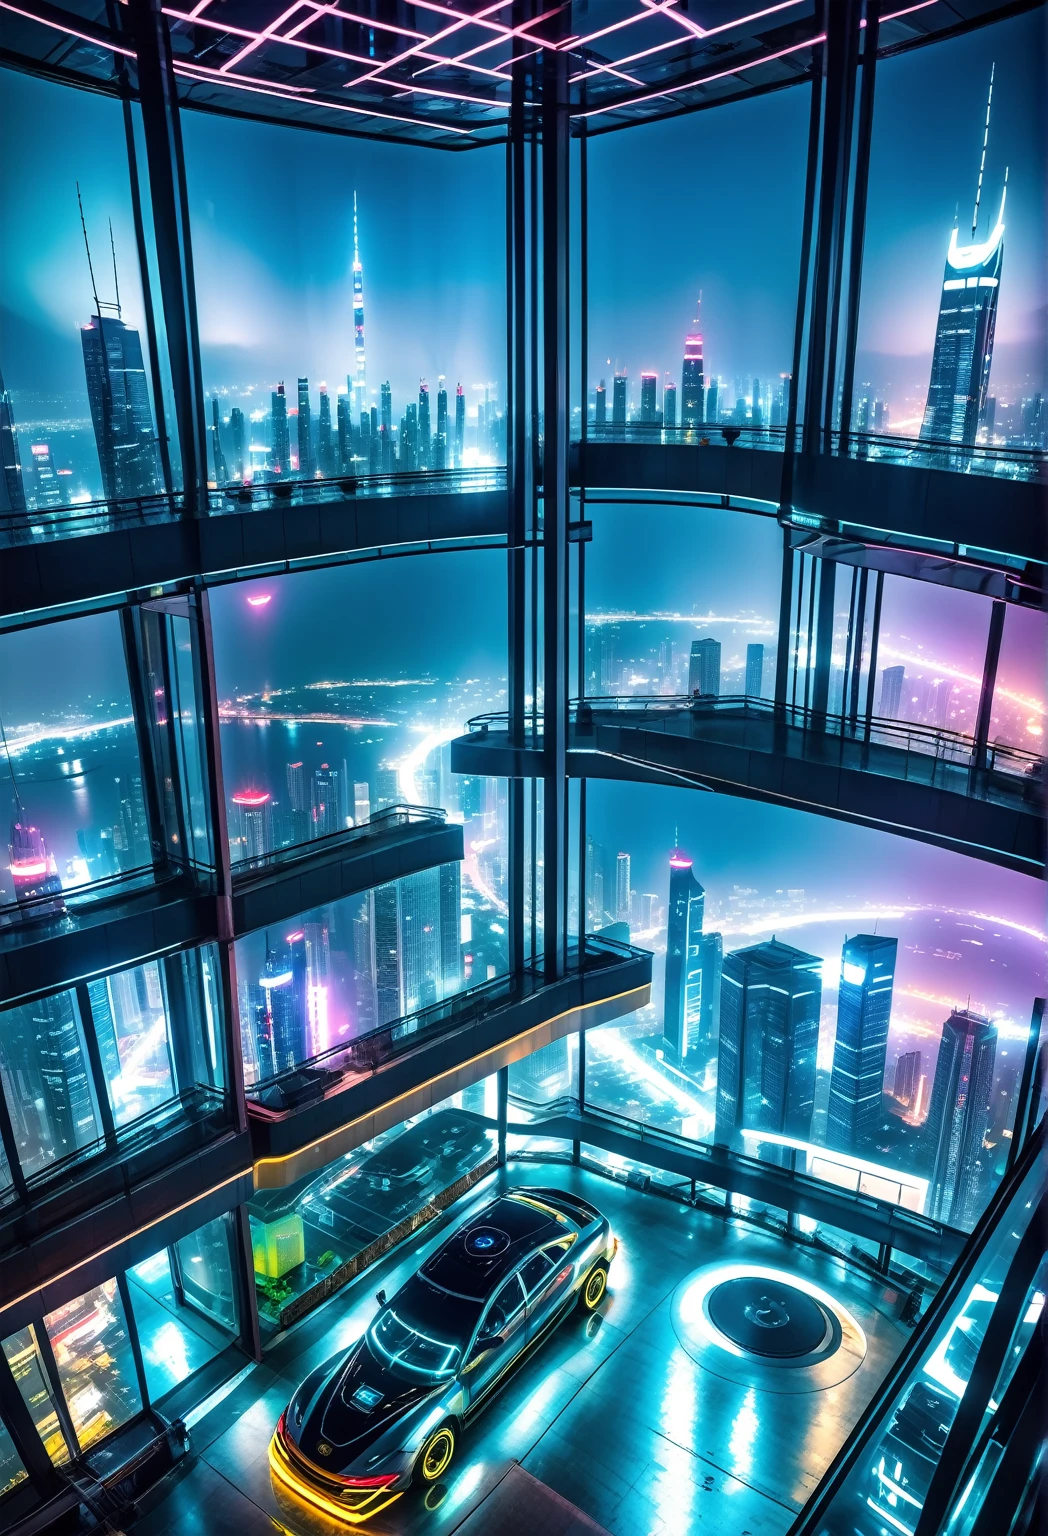 미래형 사이버펑크 스타일 도시의 초고층 빌딩 90층에 위치한 방 내부에서 본 야간 파노라마, 날아다니는 자동차를 볼 수 있어요, 네온 불빛 광고, 안개, 오염.